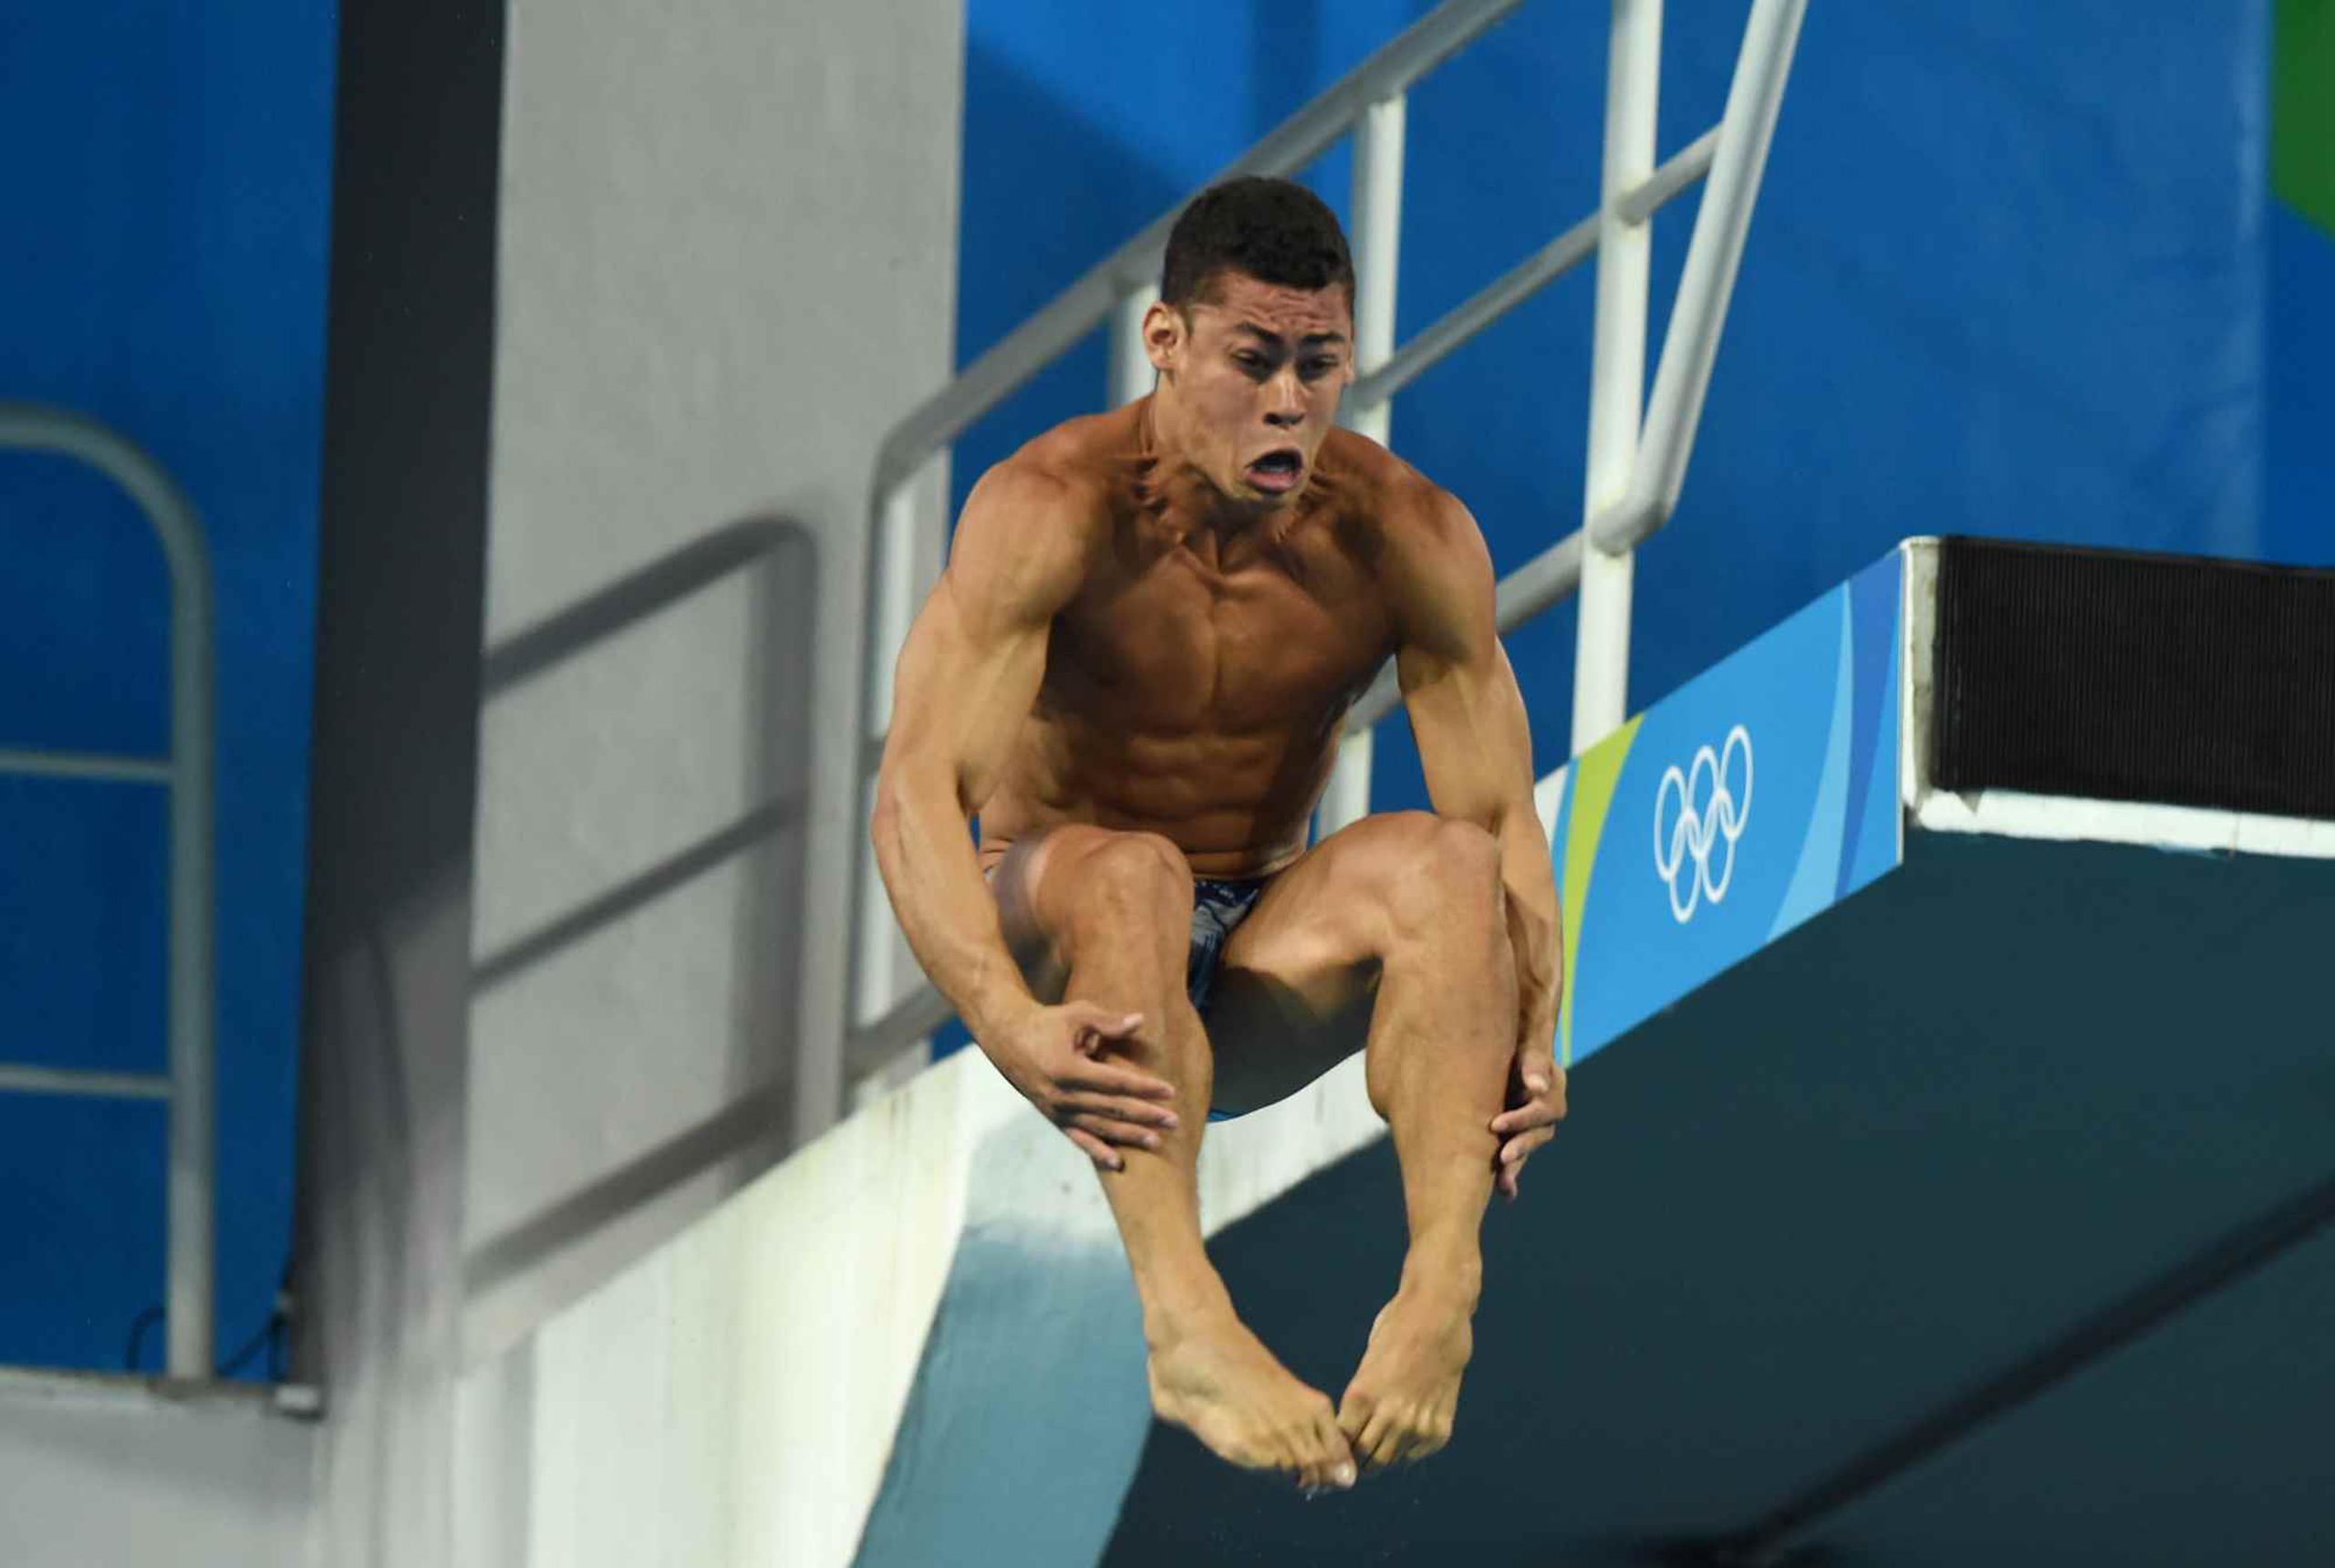 Rafael Quintero obtuvo un quinto lugar en los Panamericanos de Toronto 2015 en el evento de trampolín 3 metros. (Archivo GFR Media)